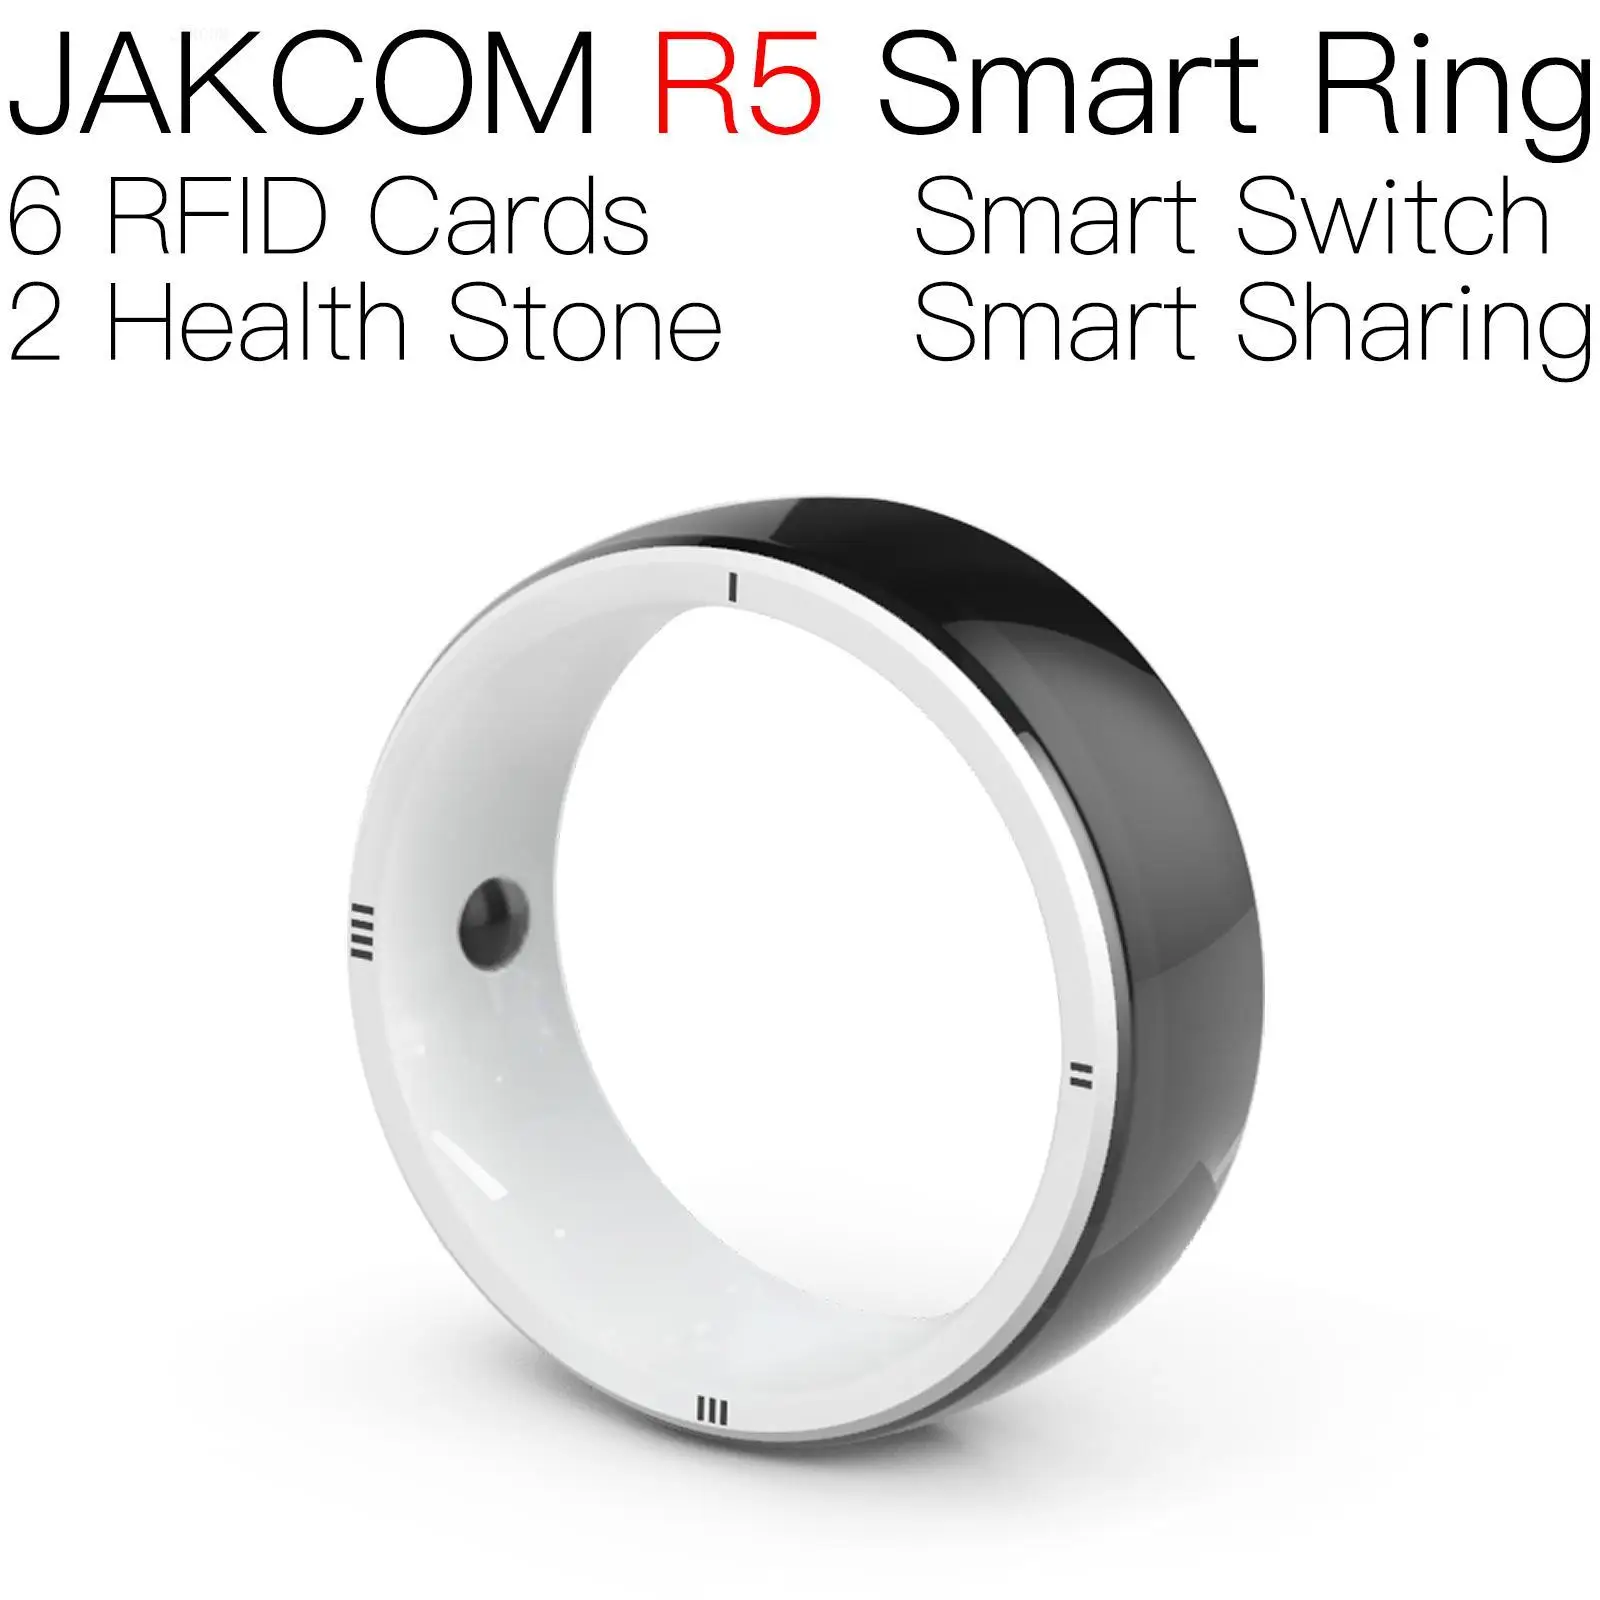 

JAKCOM R5 смарт-кольцо новый продукт как nfc металлическая карта uhf rfid английский bf Английский видео водонепроницаемый антиметалл anleon s2 оригинал